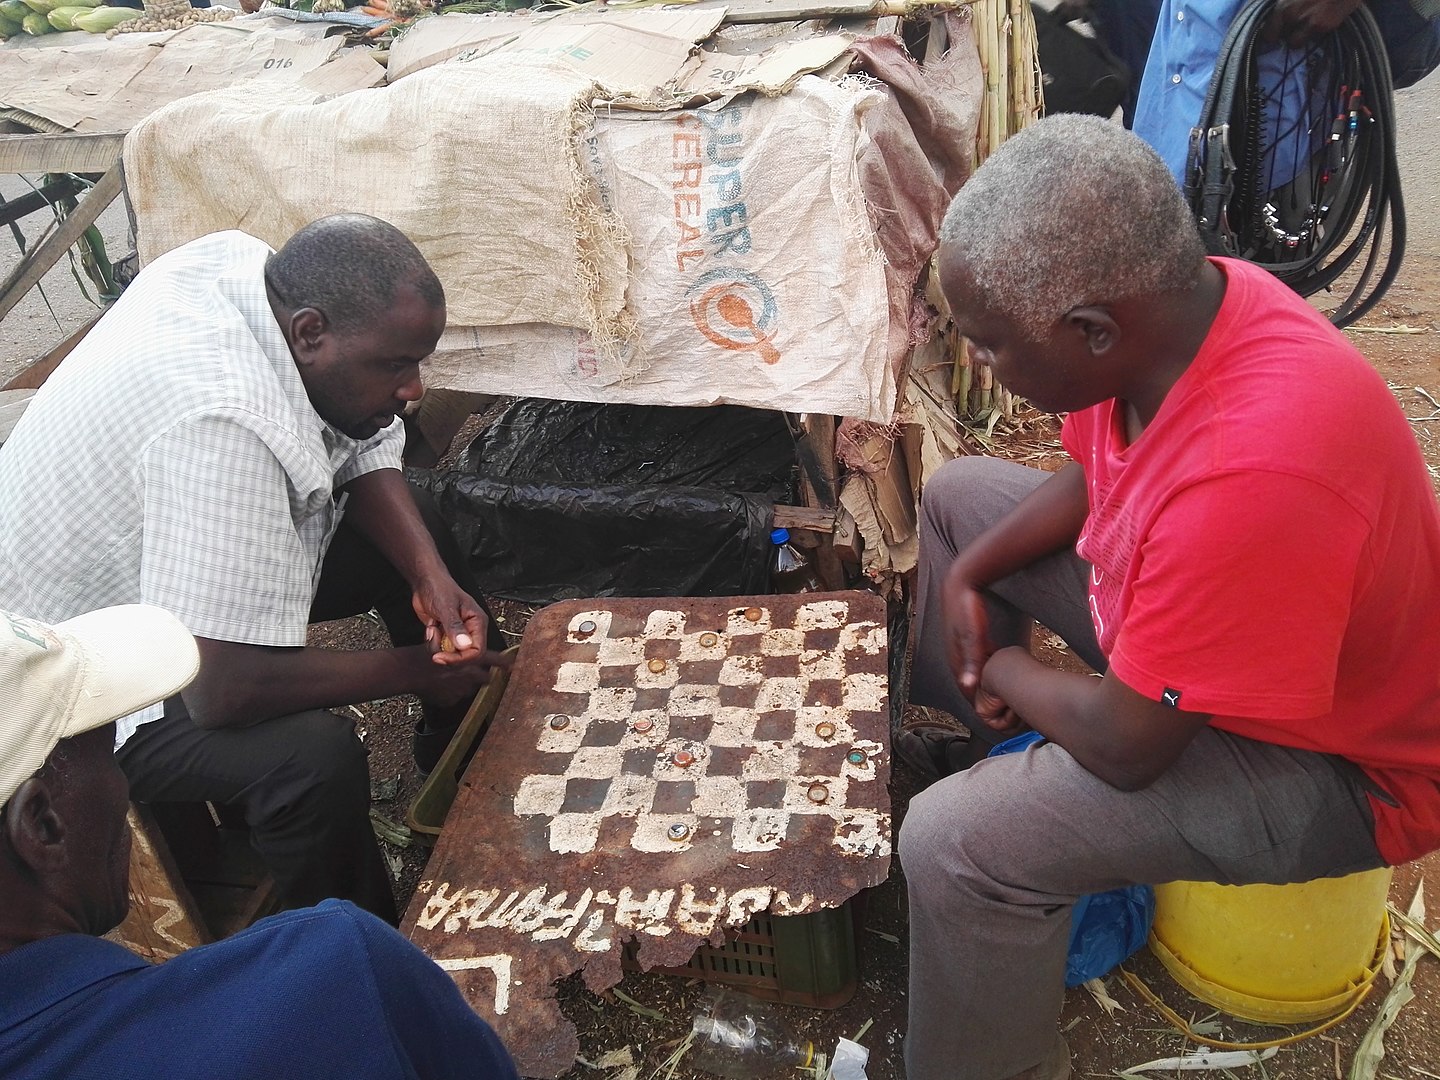 Fotografía que muestra dos hombres africanos jugando ajedrez en condiciones precarias